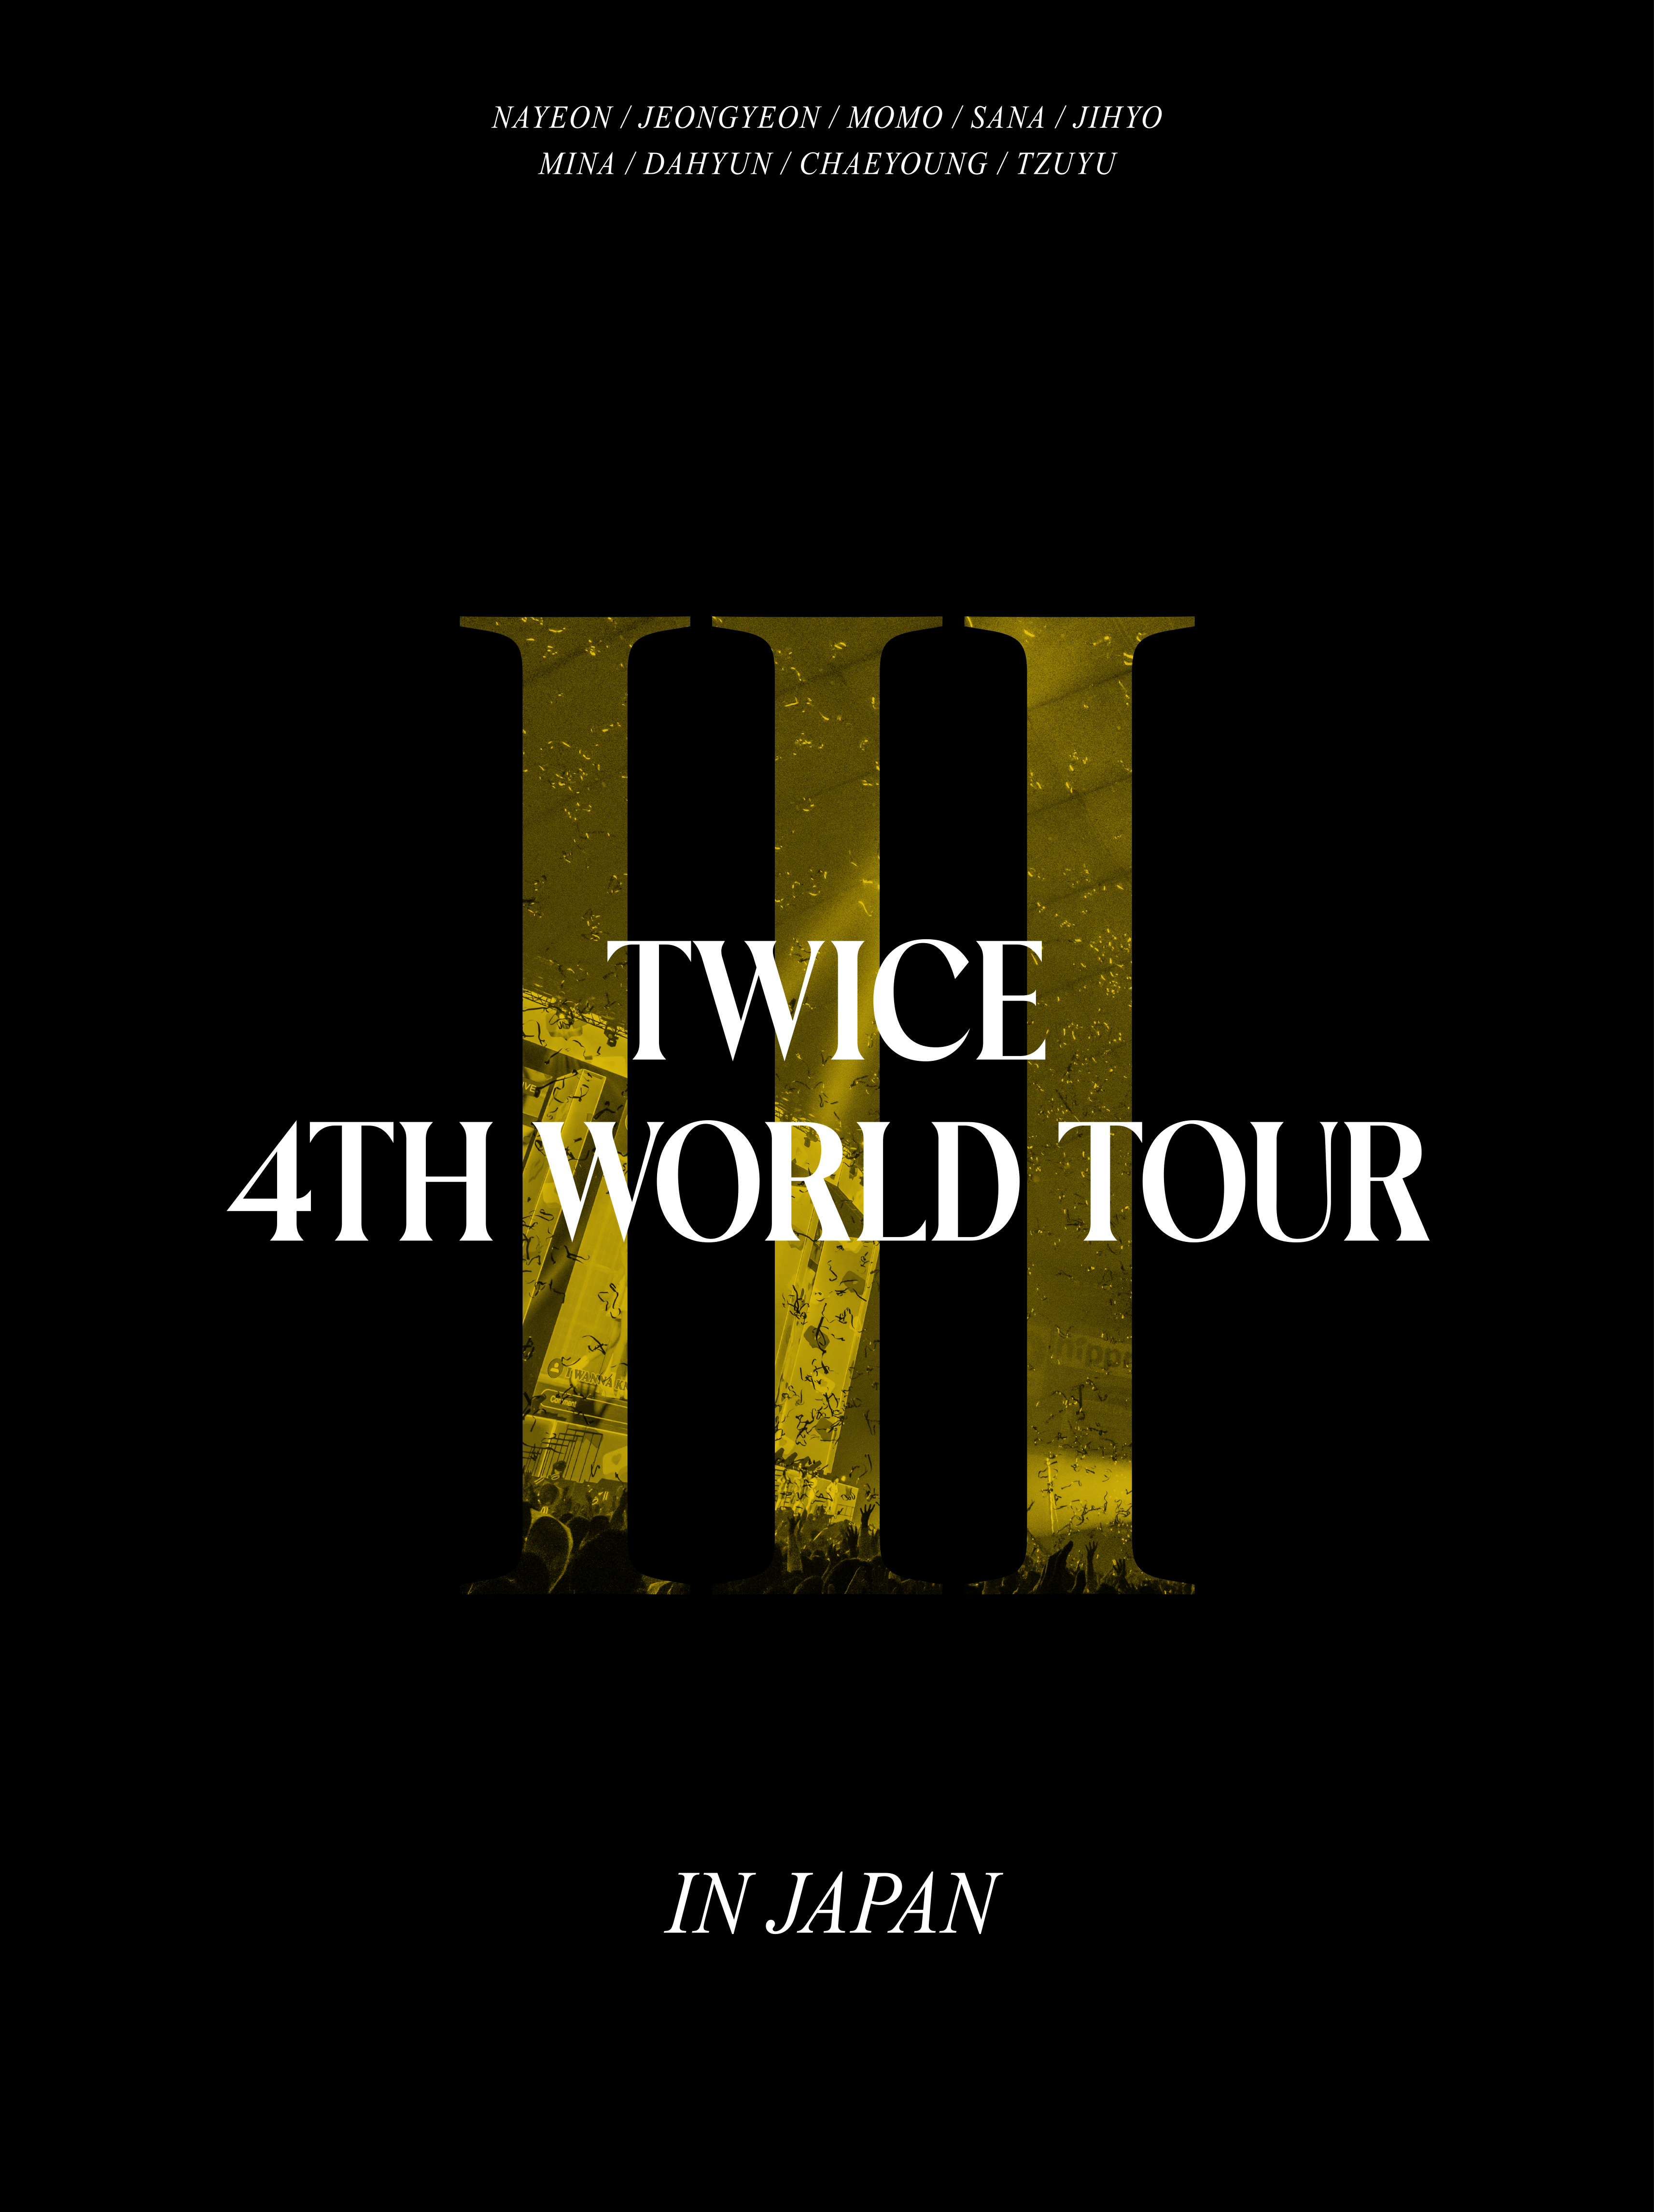 TWICE 4TH WORLD TOUR 'III' IN JAPAN